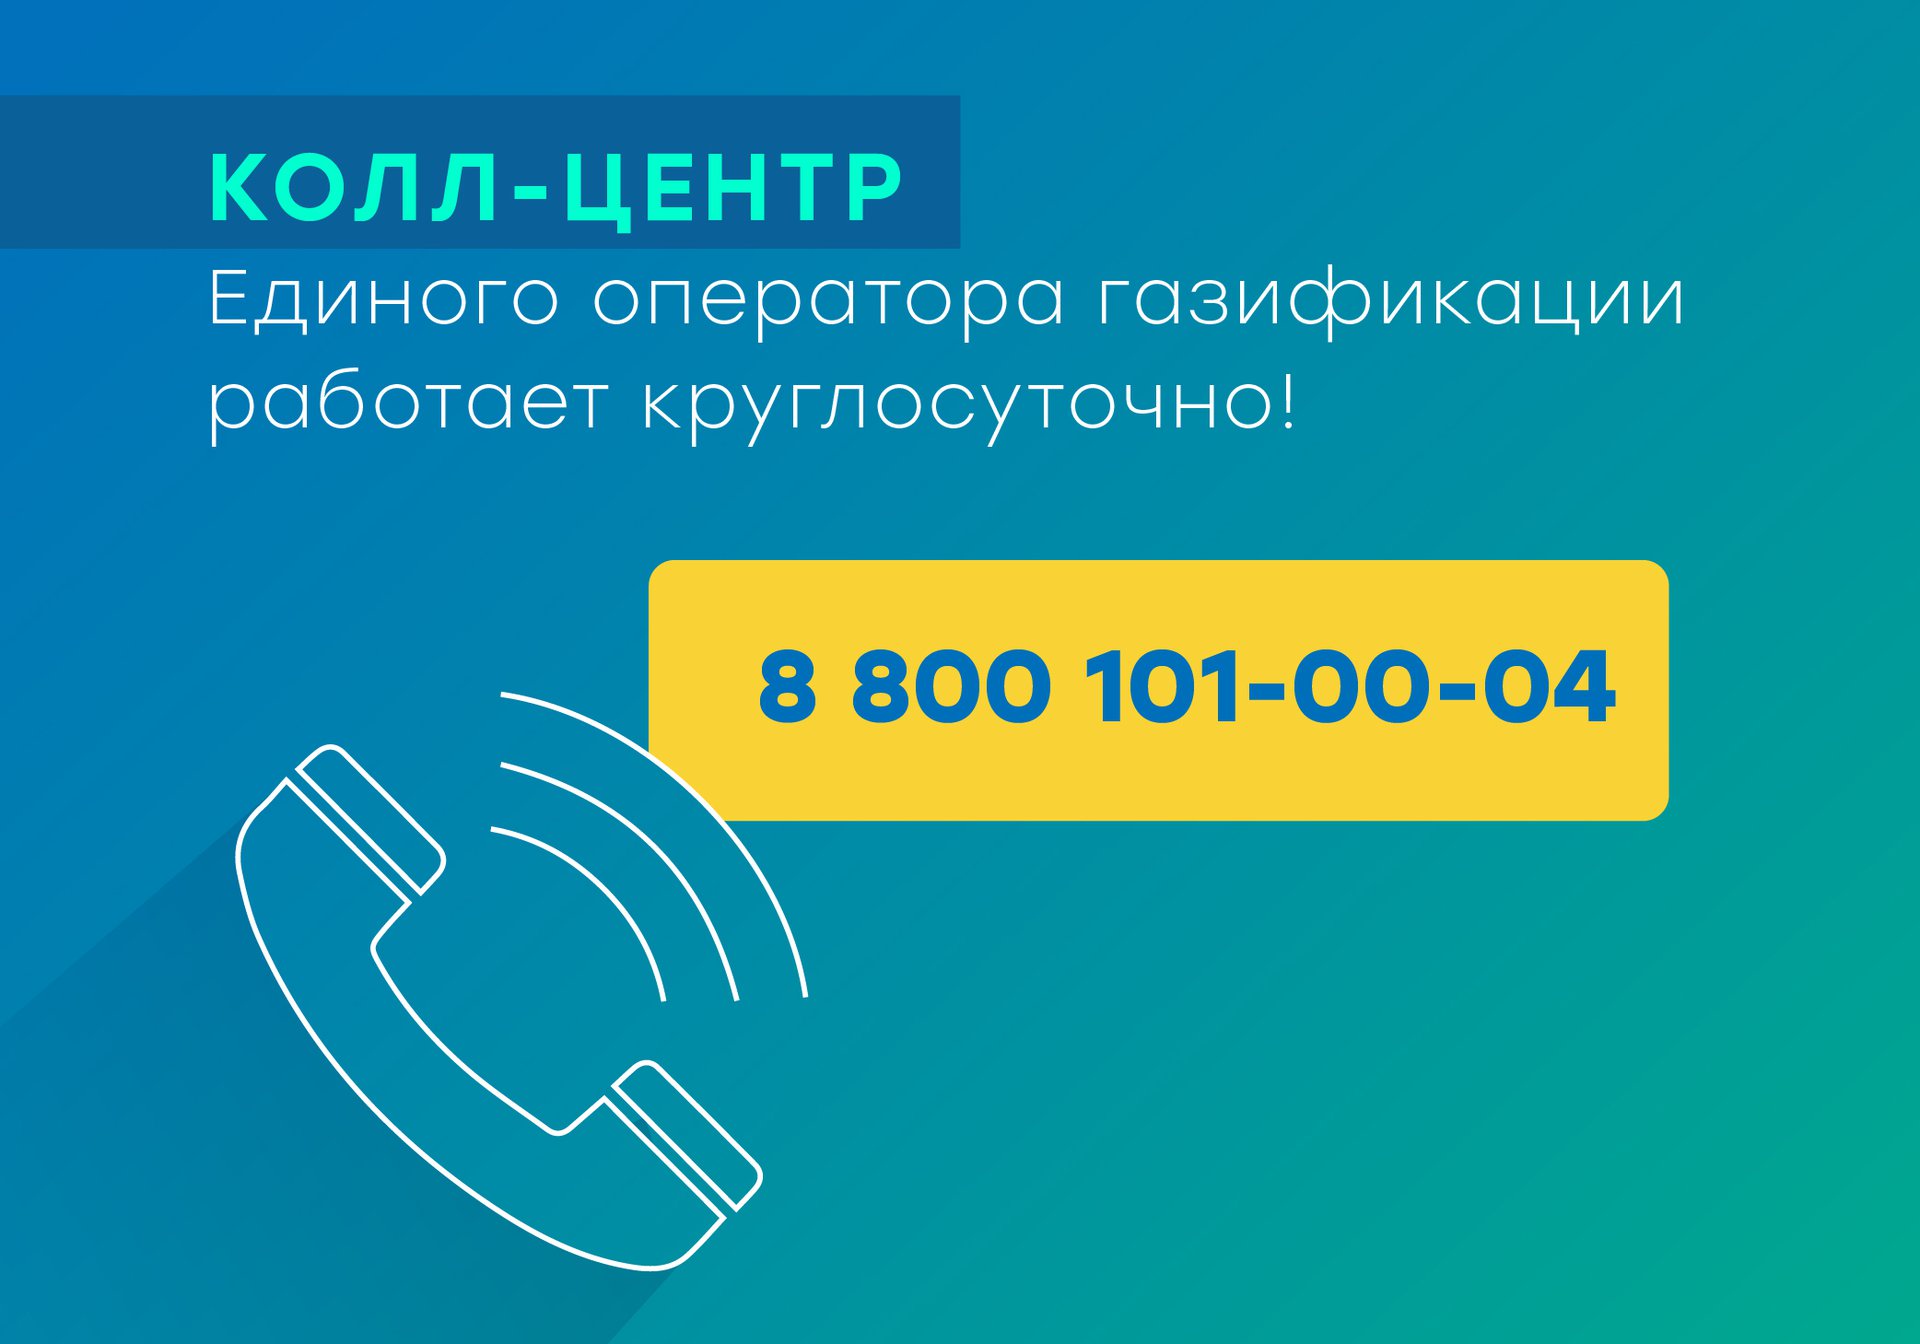 В call-центр Единого оператора газификации поступило рекордное количество звонков